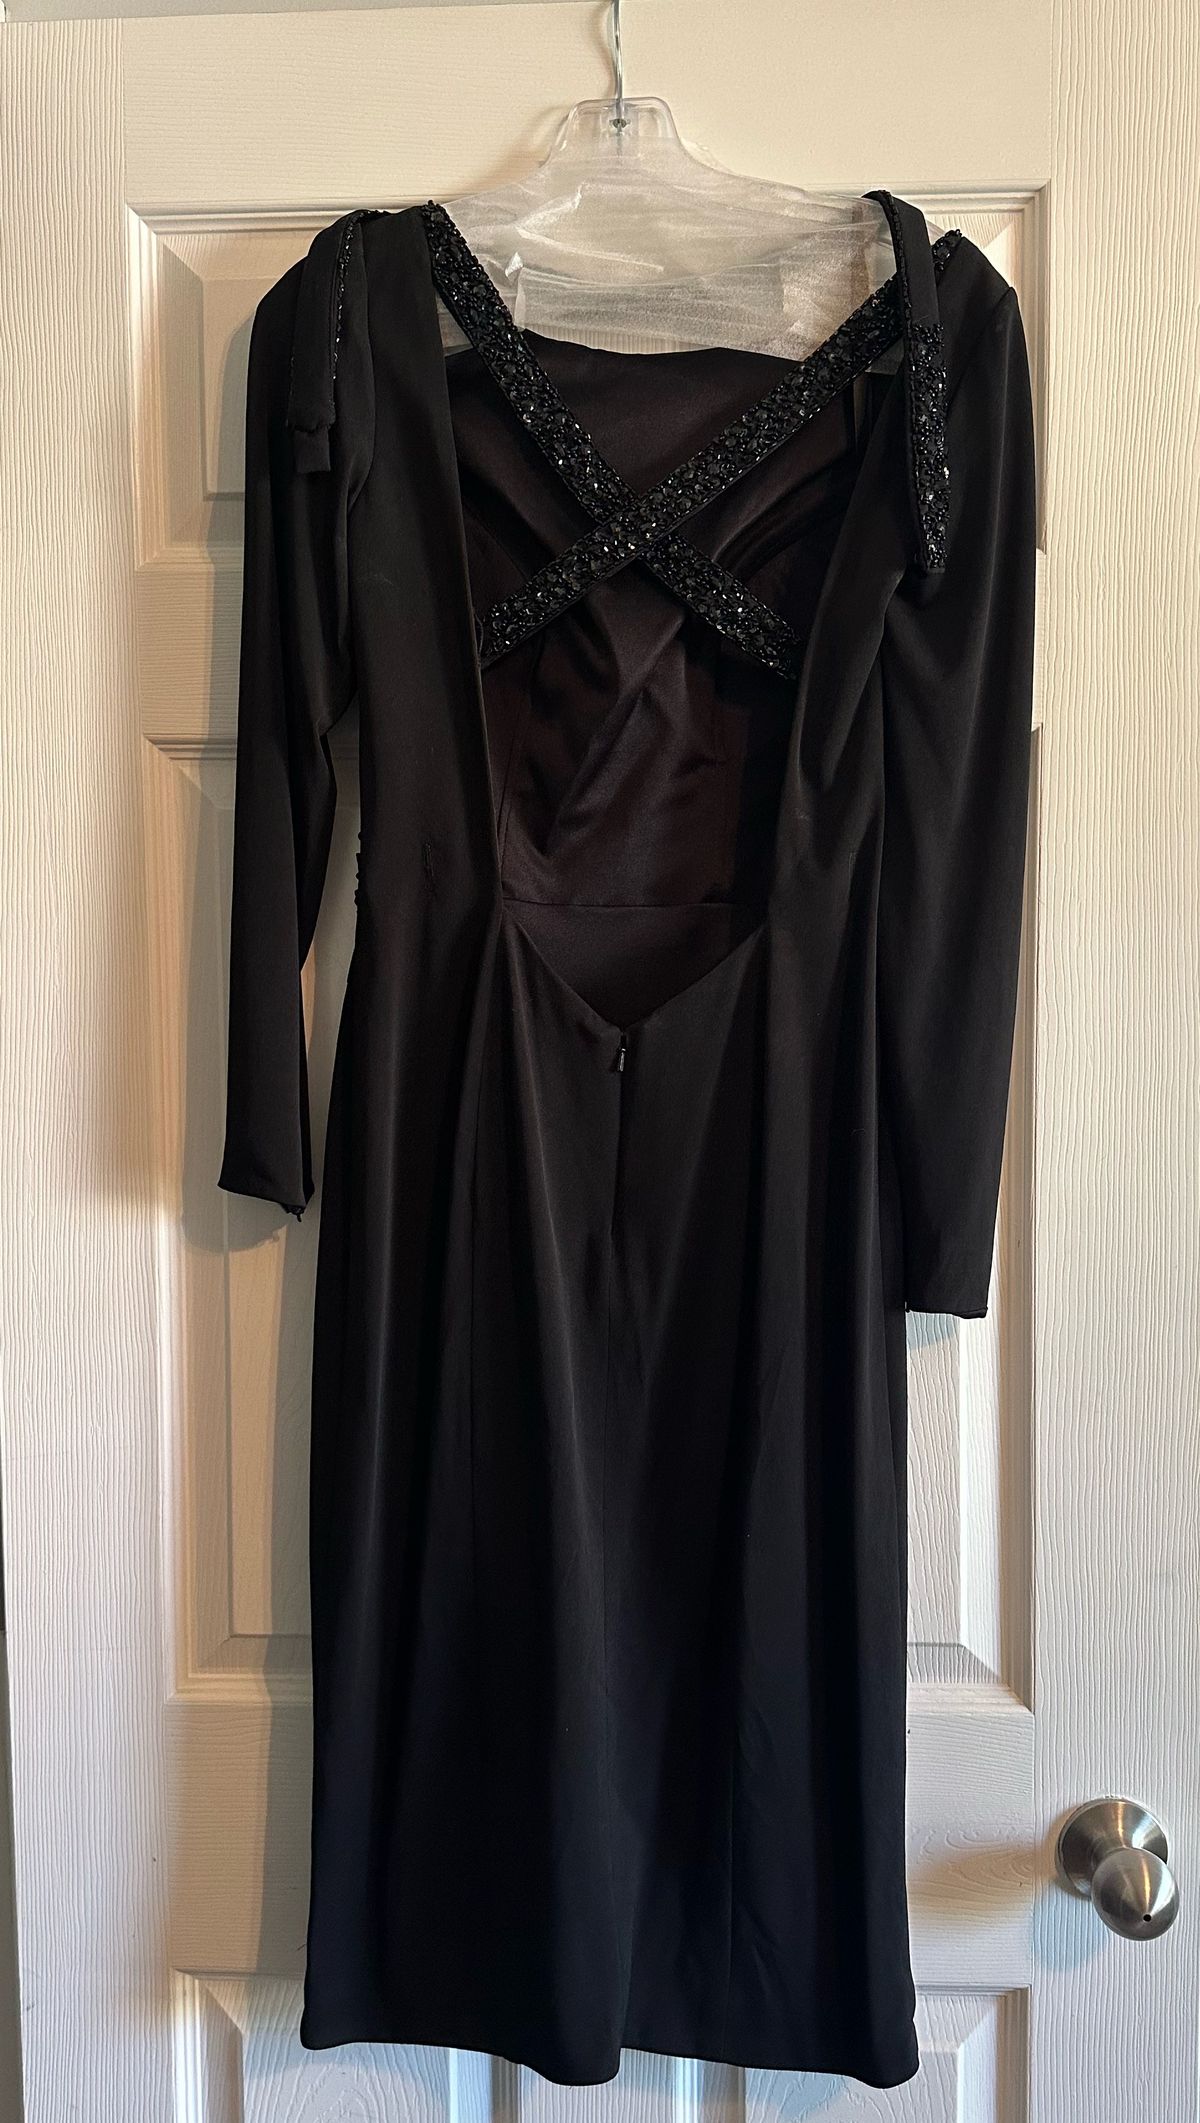 Style L1175 Rachel Allan Size 8 Pageant Long Sleeve Black Side Slit Dress on Queenly